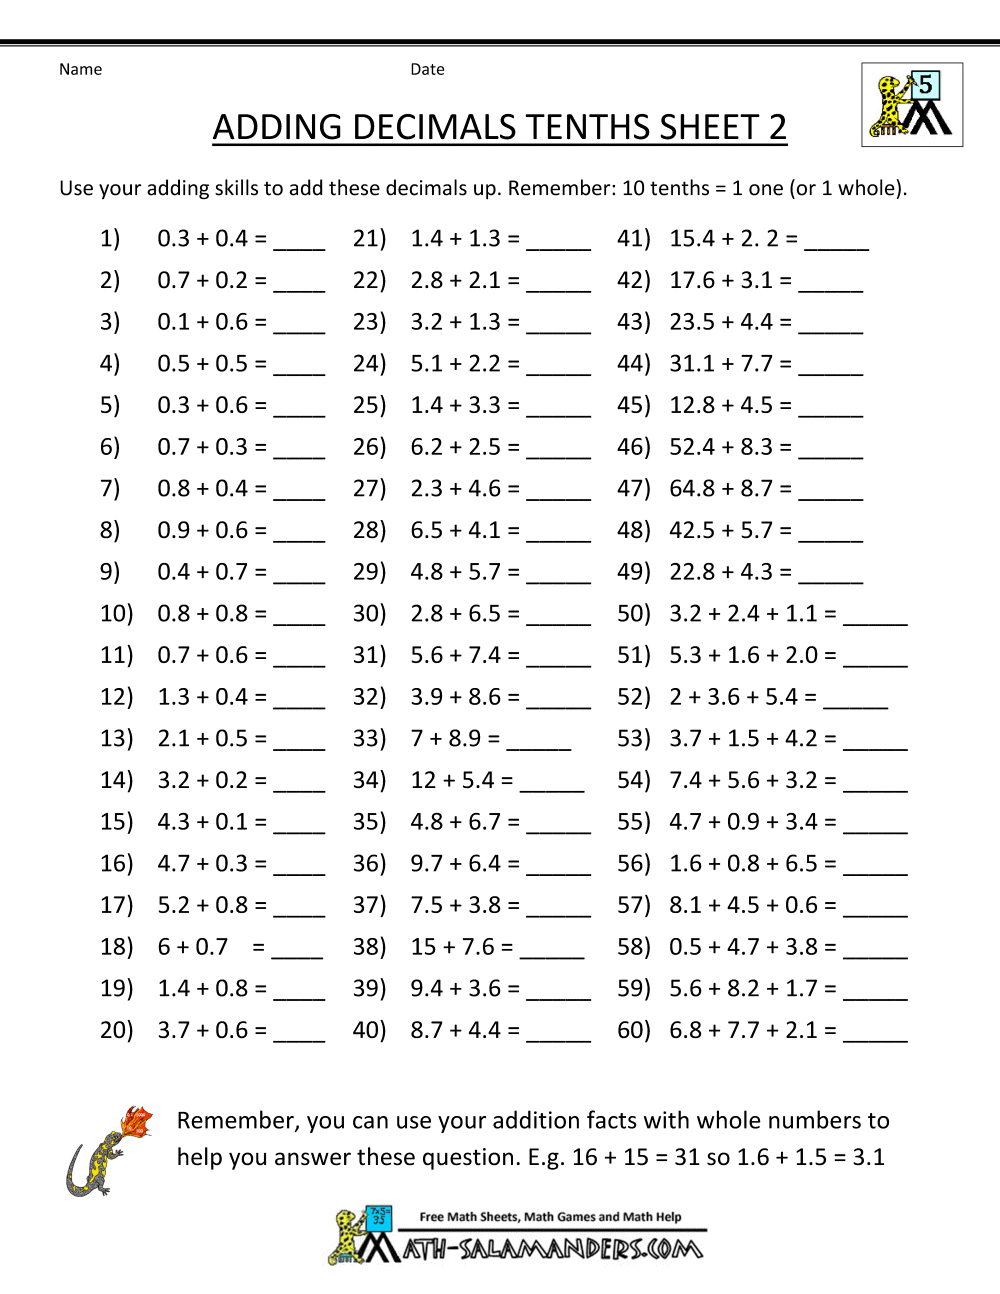 homework-sheets-maths-year-6